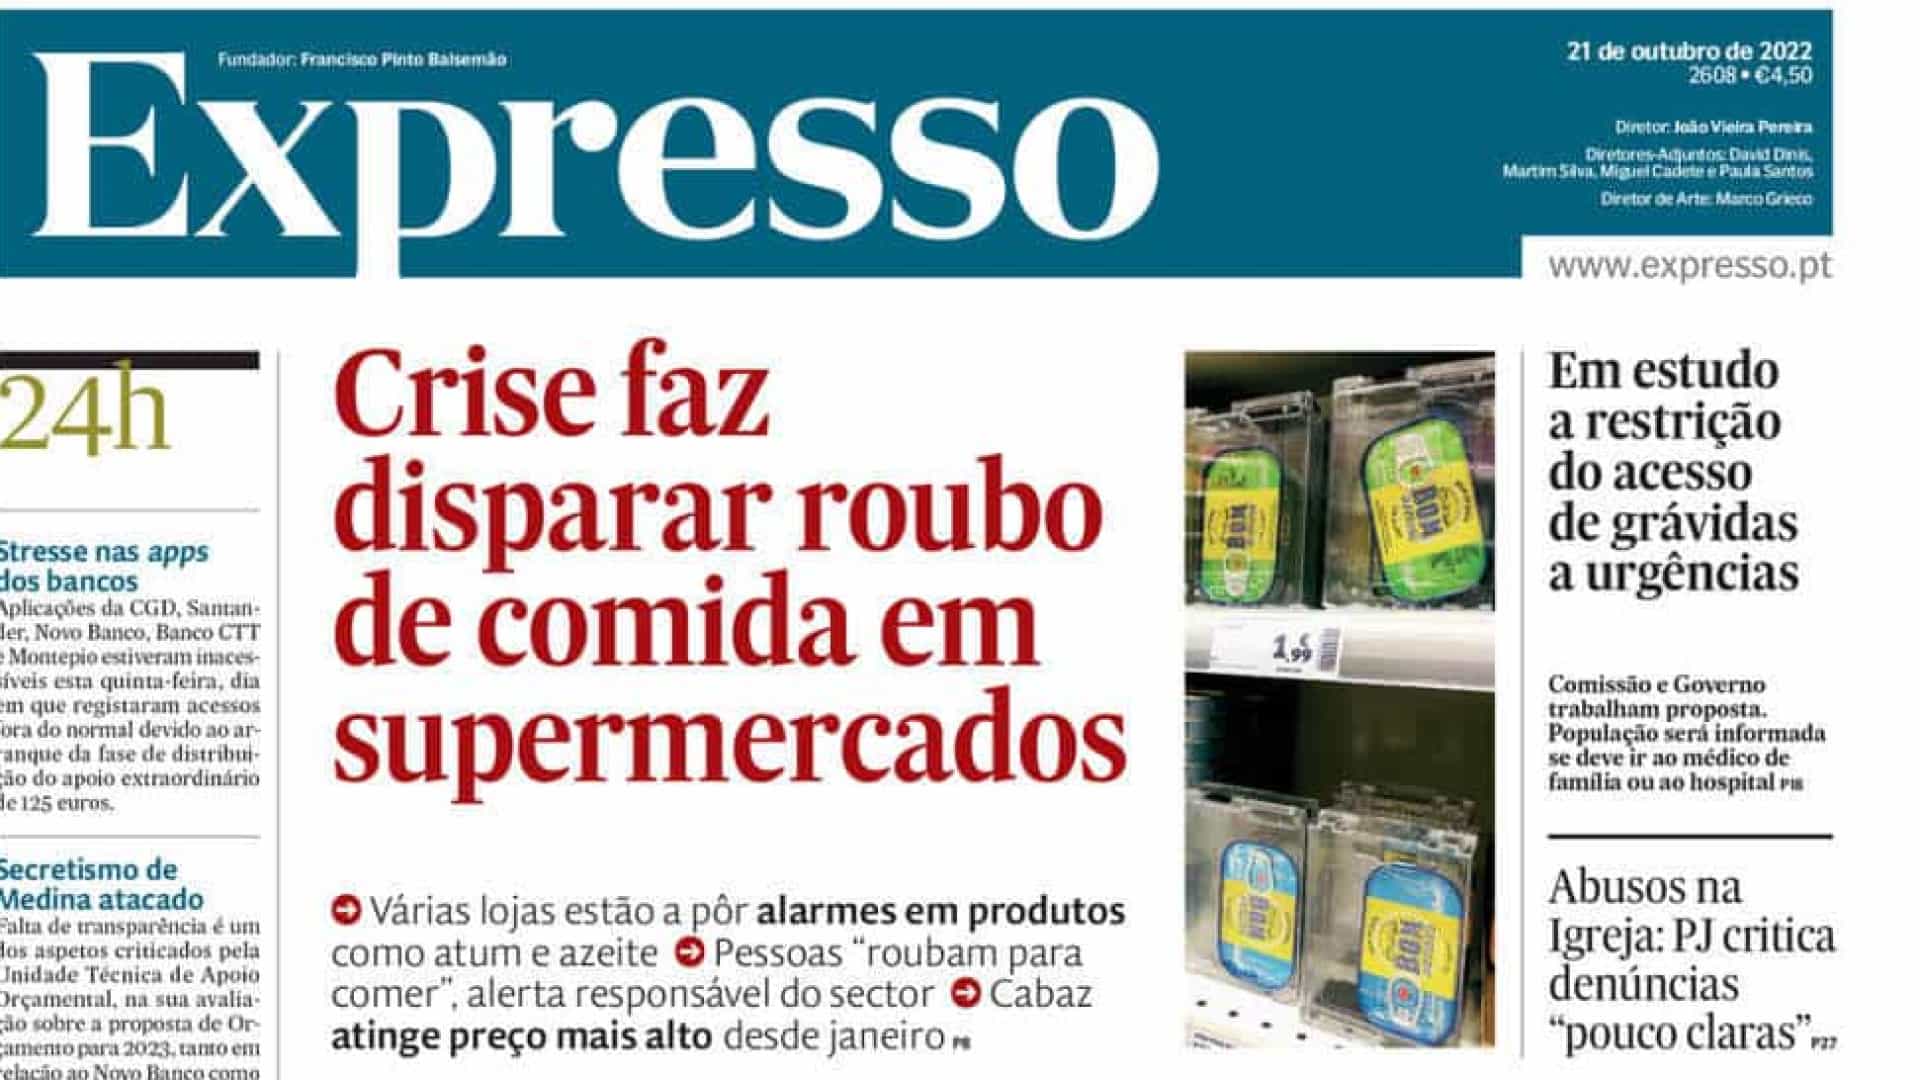 Portugal/Poder aquisitivo: Em Portugal, a crise está a provocar o roubo de alimentos nos supermercados